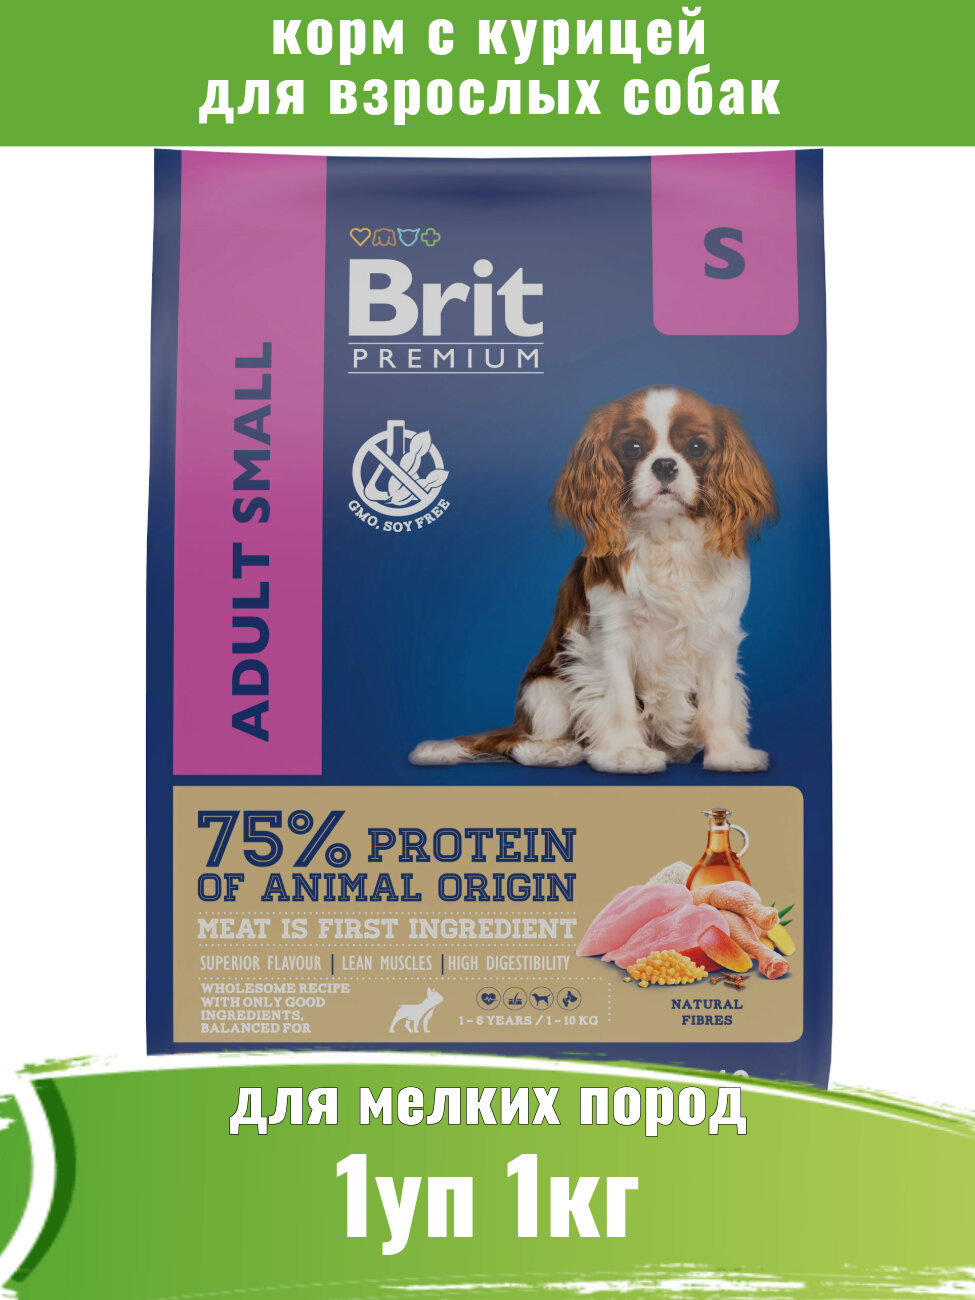 Брит Premium Dog Adult Small с курицей для взрослых собак мелких пород, 1 кг